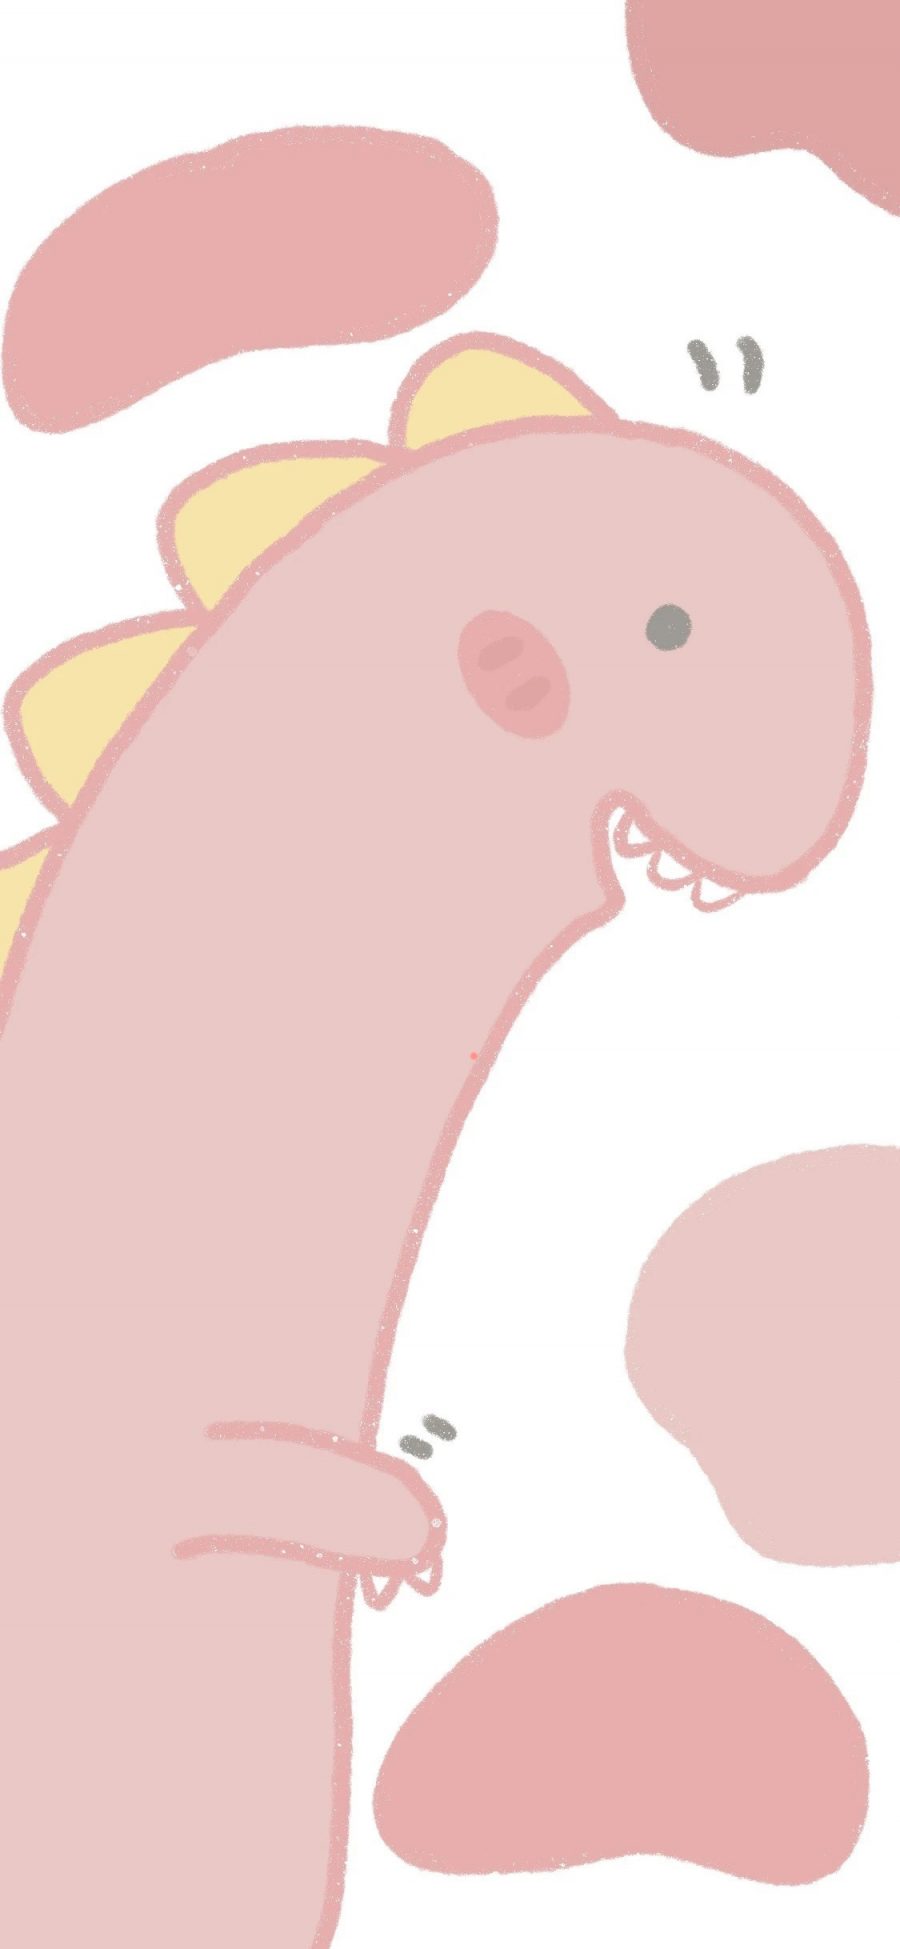 [2436×1125]恐龙 怪兽 可爱 粉 苹果手机动漫壁纸图片